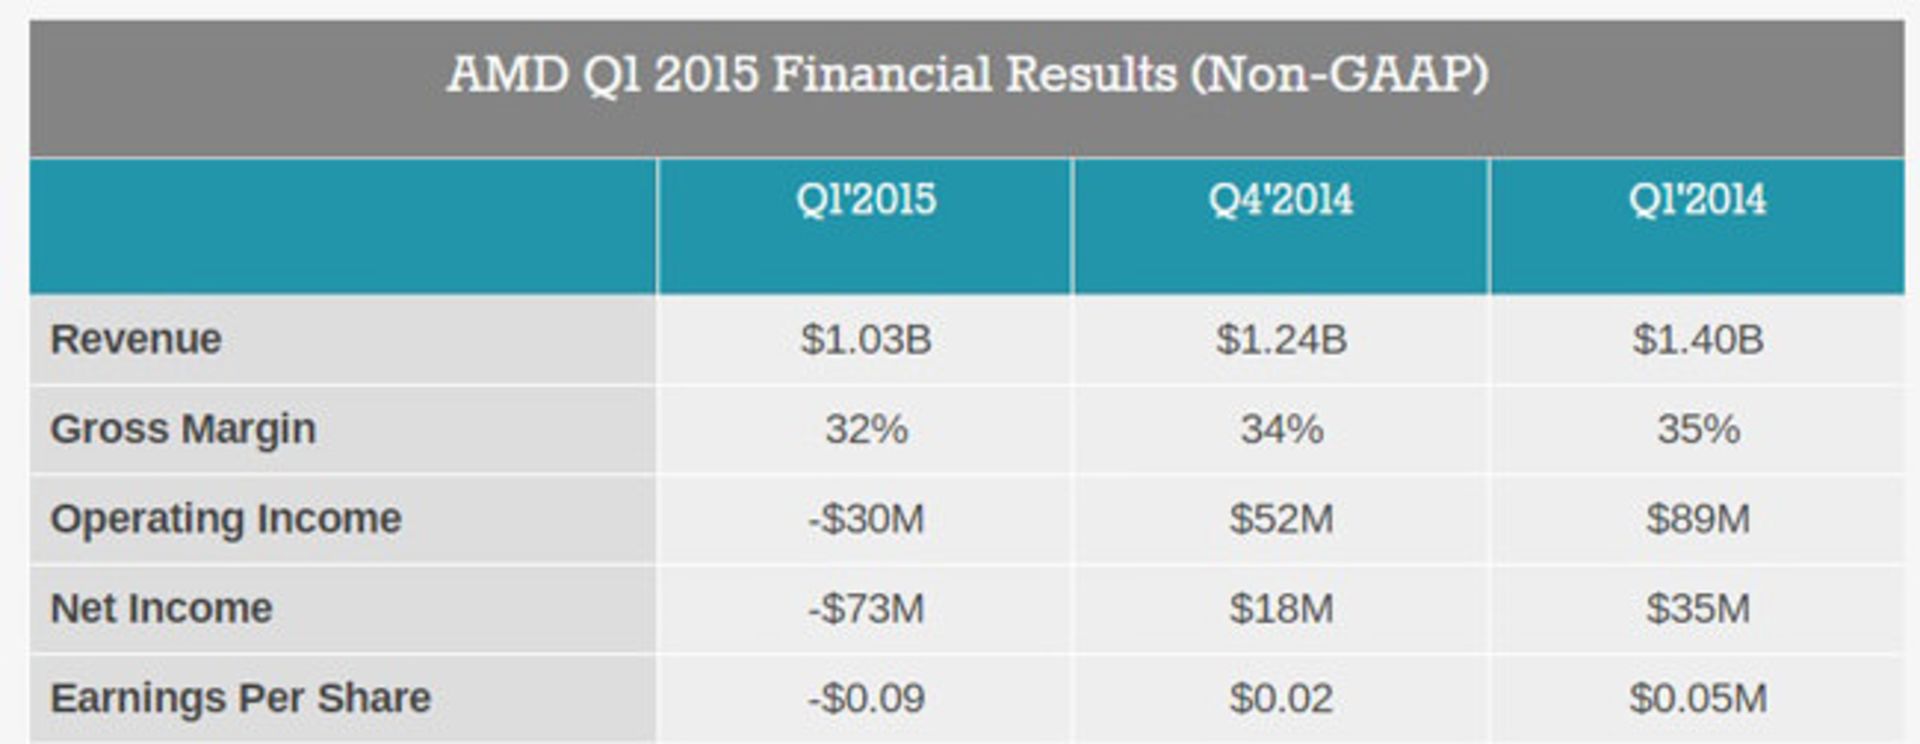 گزارش مالی غیررسمی سه ماهه‌ی اول 2015 AMD